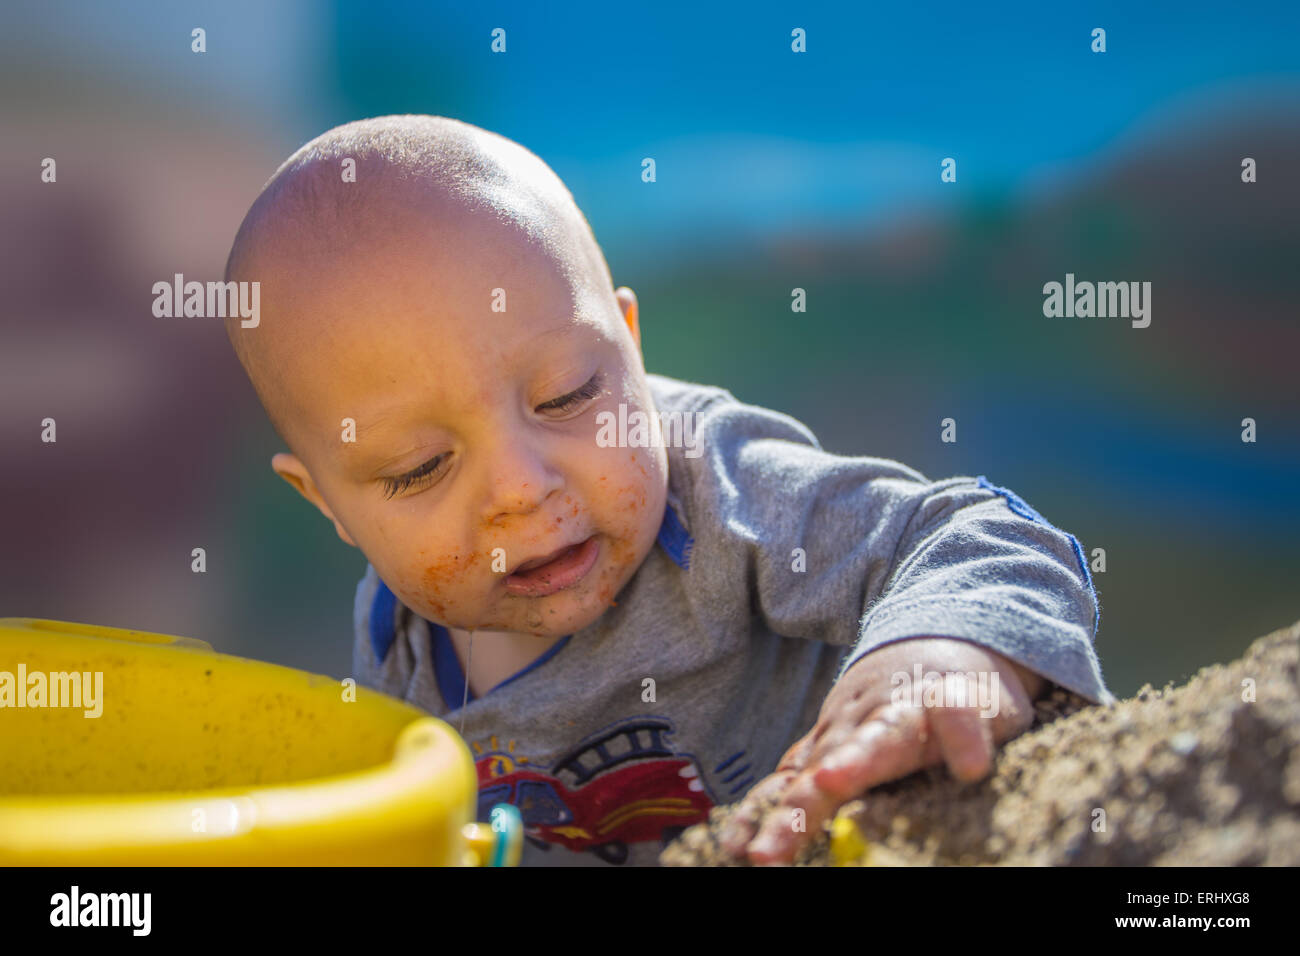 Bébé Garçon jouant dans le bac à sable pour la première fois. Banque D'Images